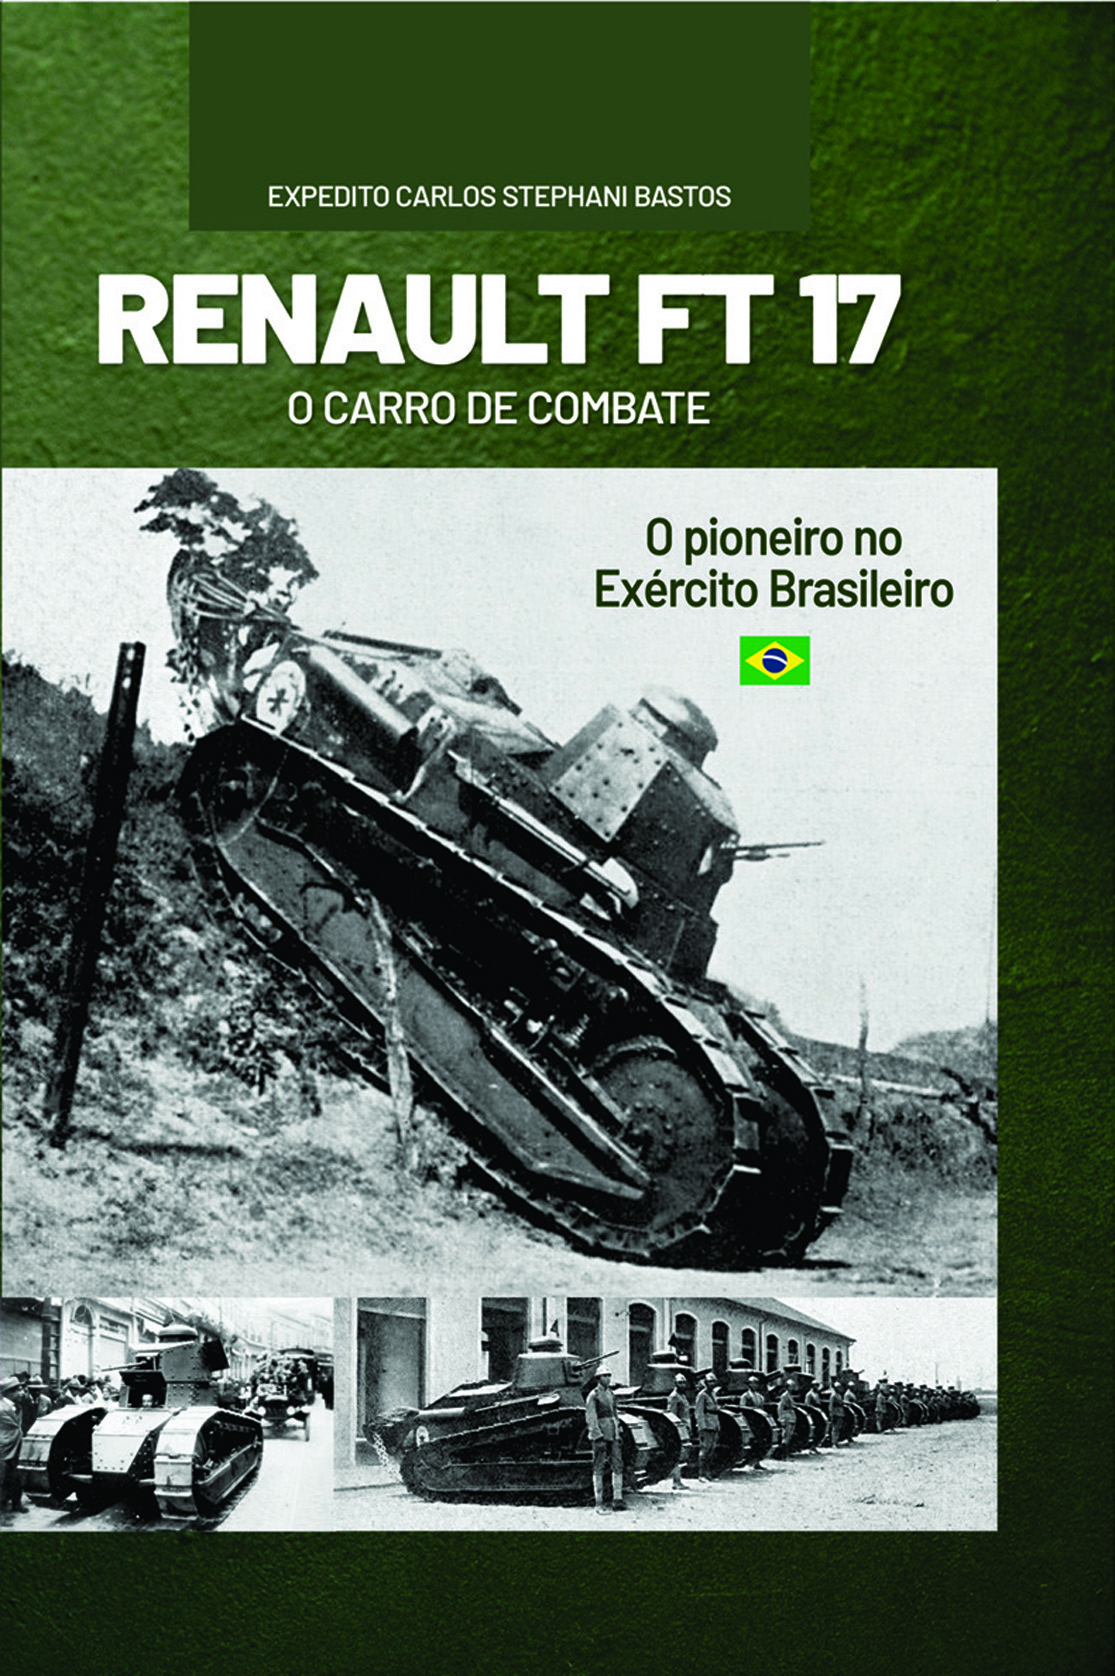 Renaut FT-17 - O primeiro carro de combate do Exército Brasileiro